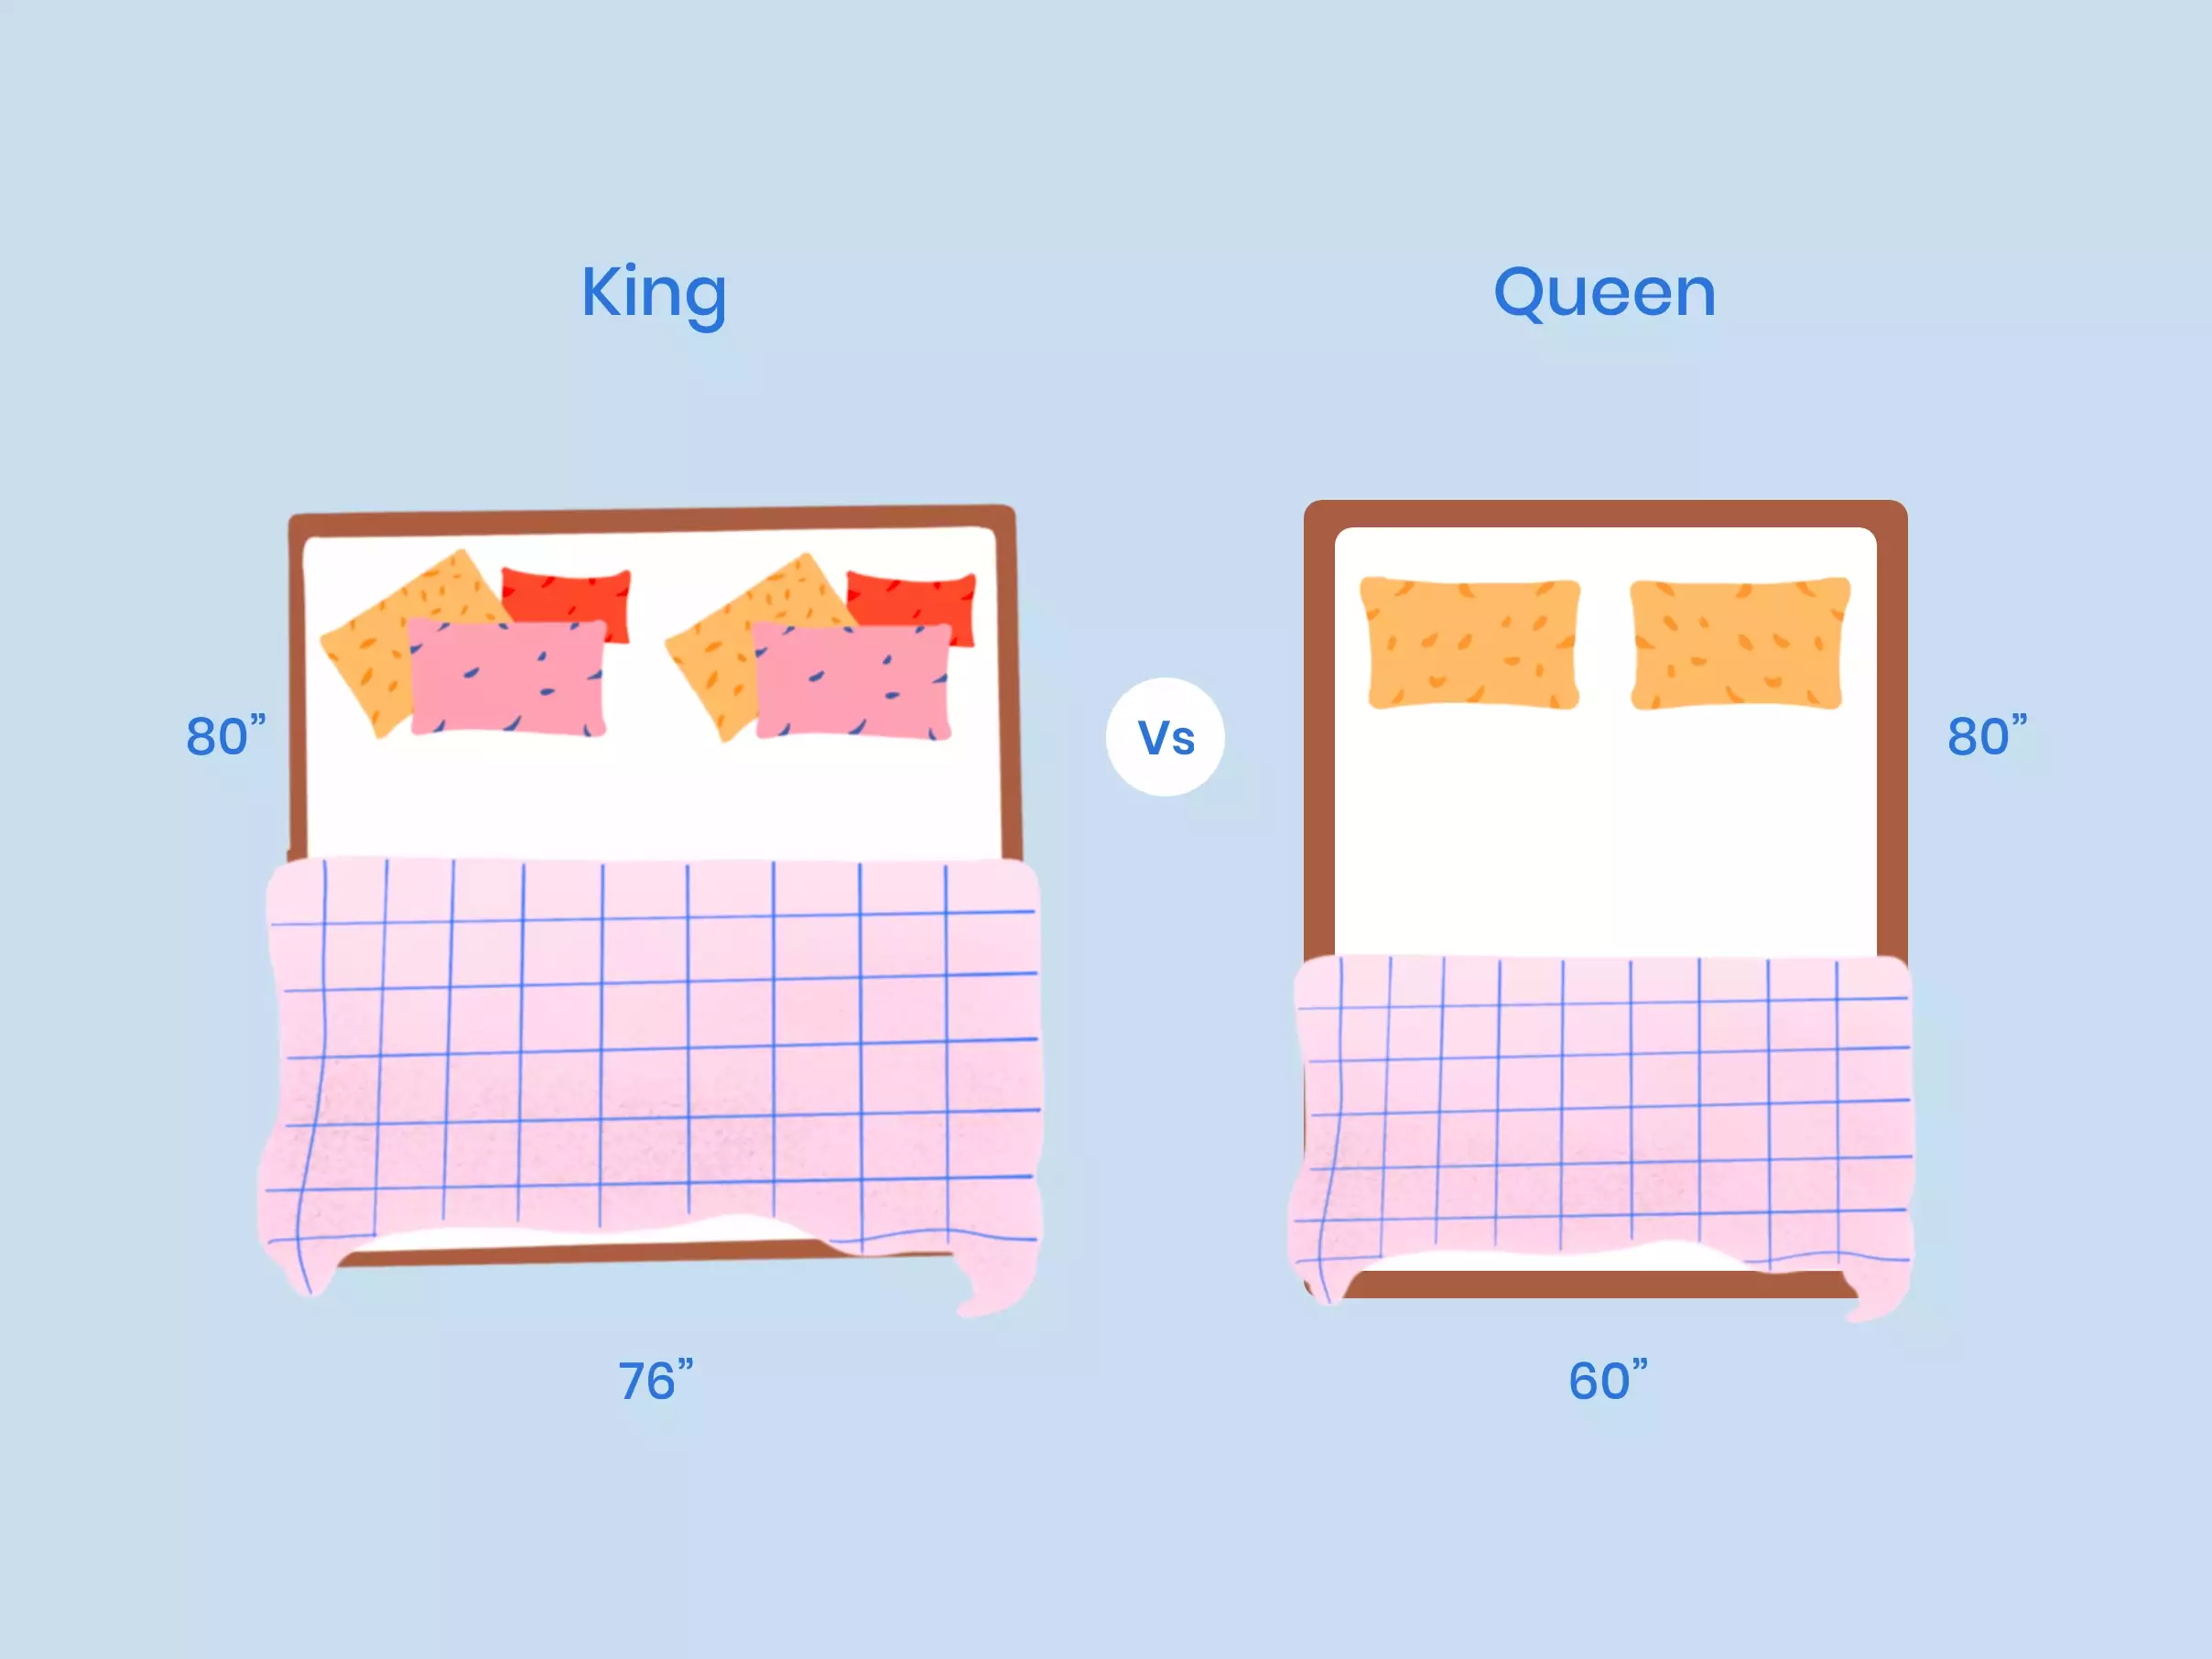 California King vs Queen Mattress Size